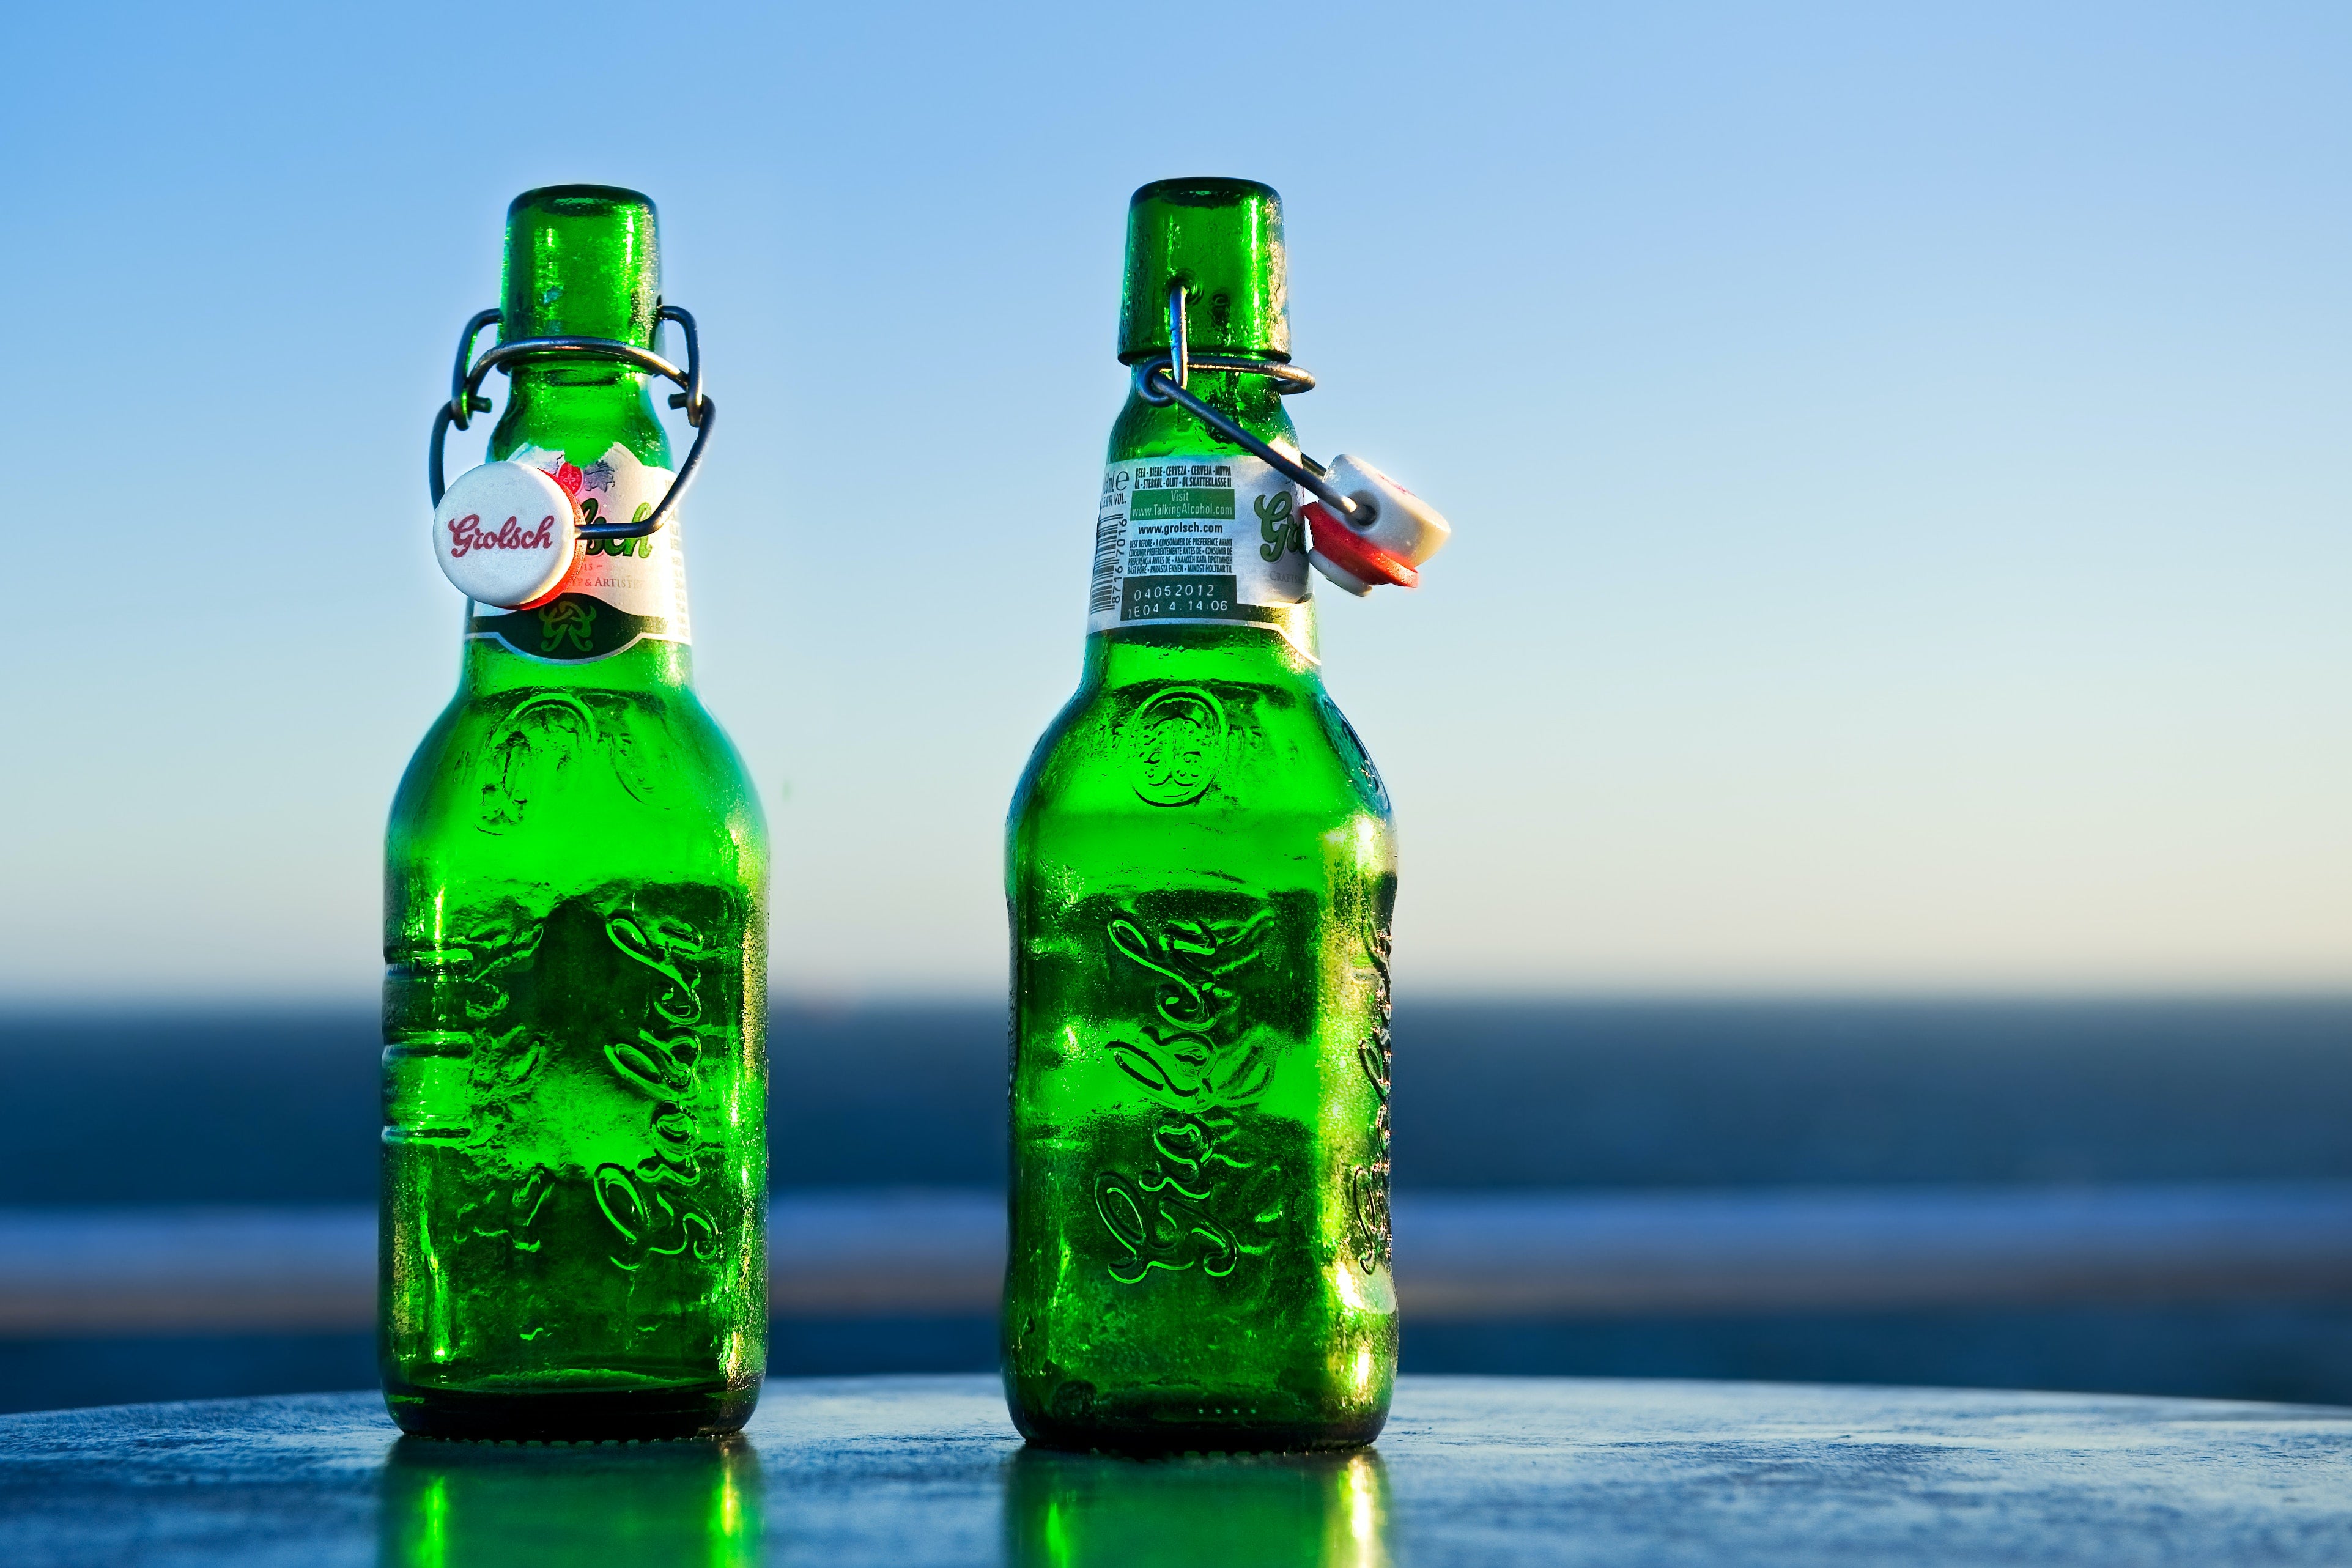 Grolsch Premium Pilsner Bier - Das Premium Bier aus den Niederlanden